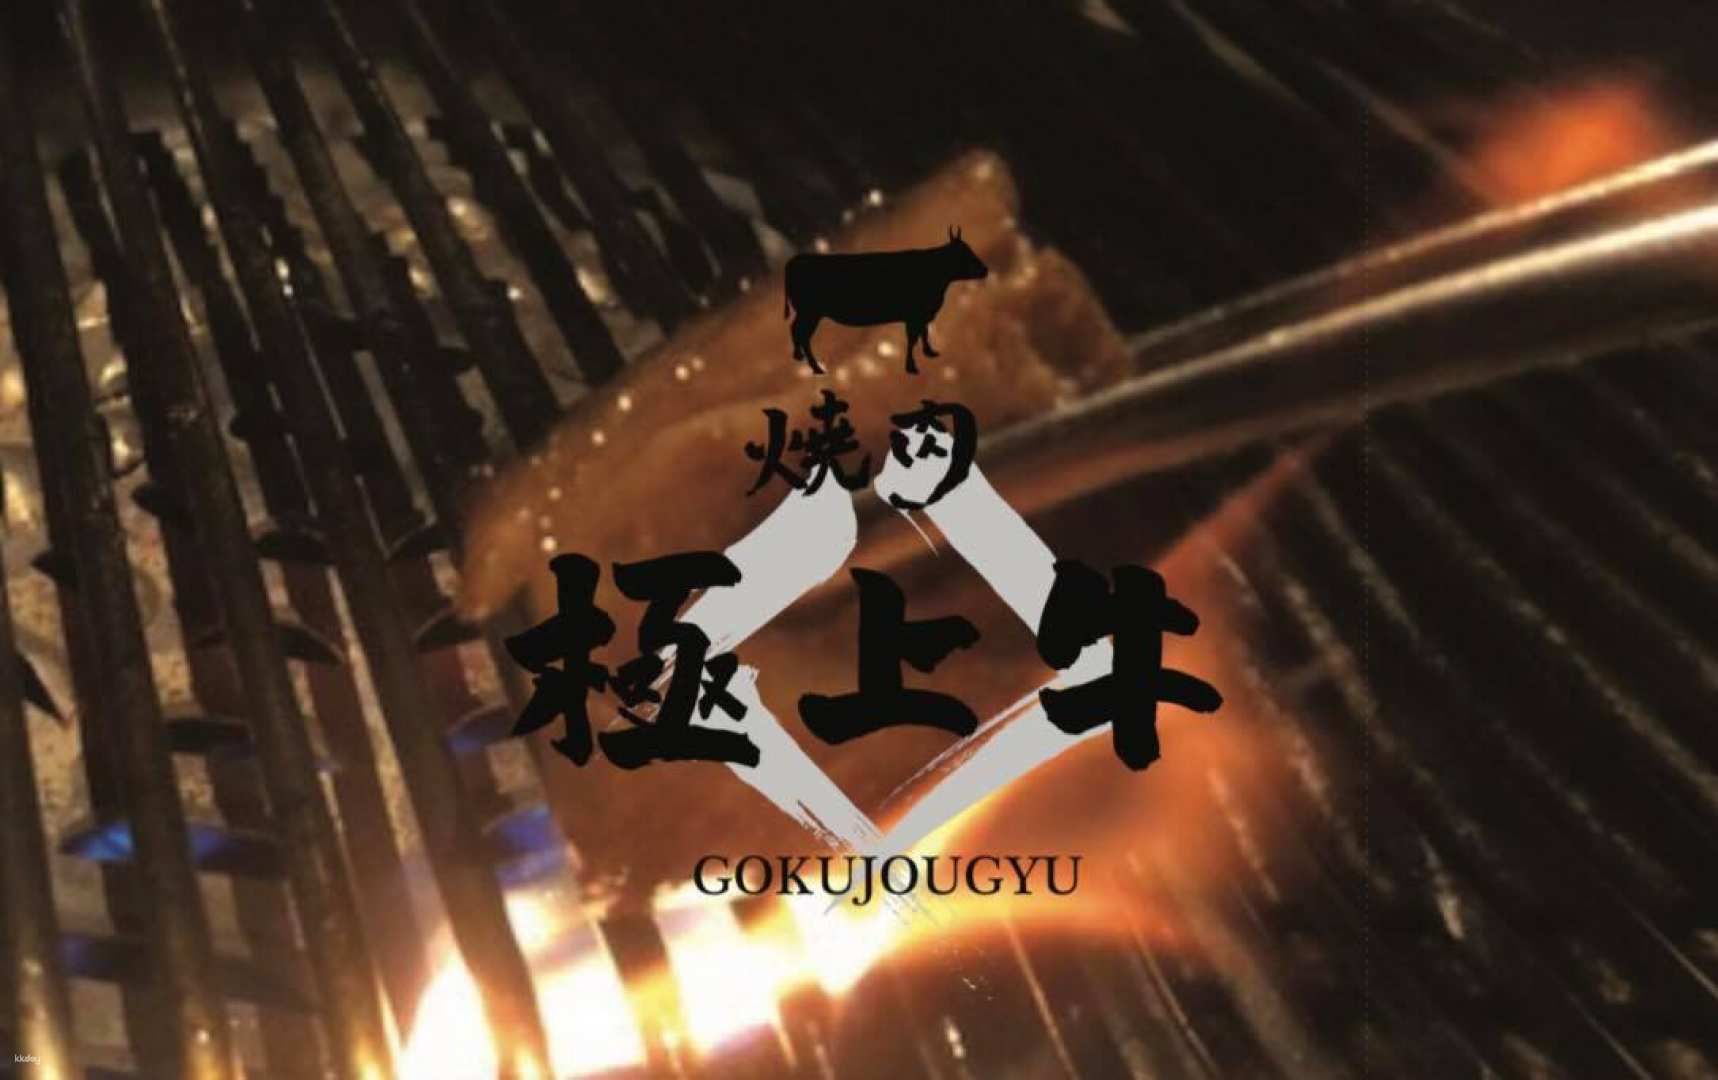 Gokujougyu